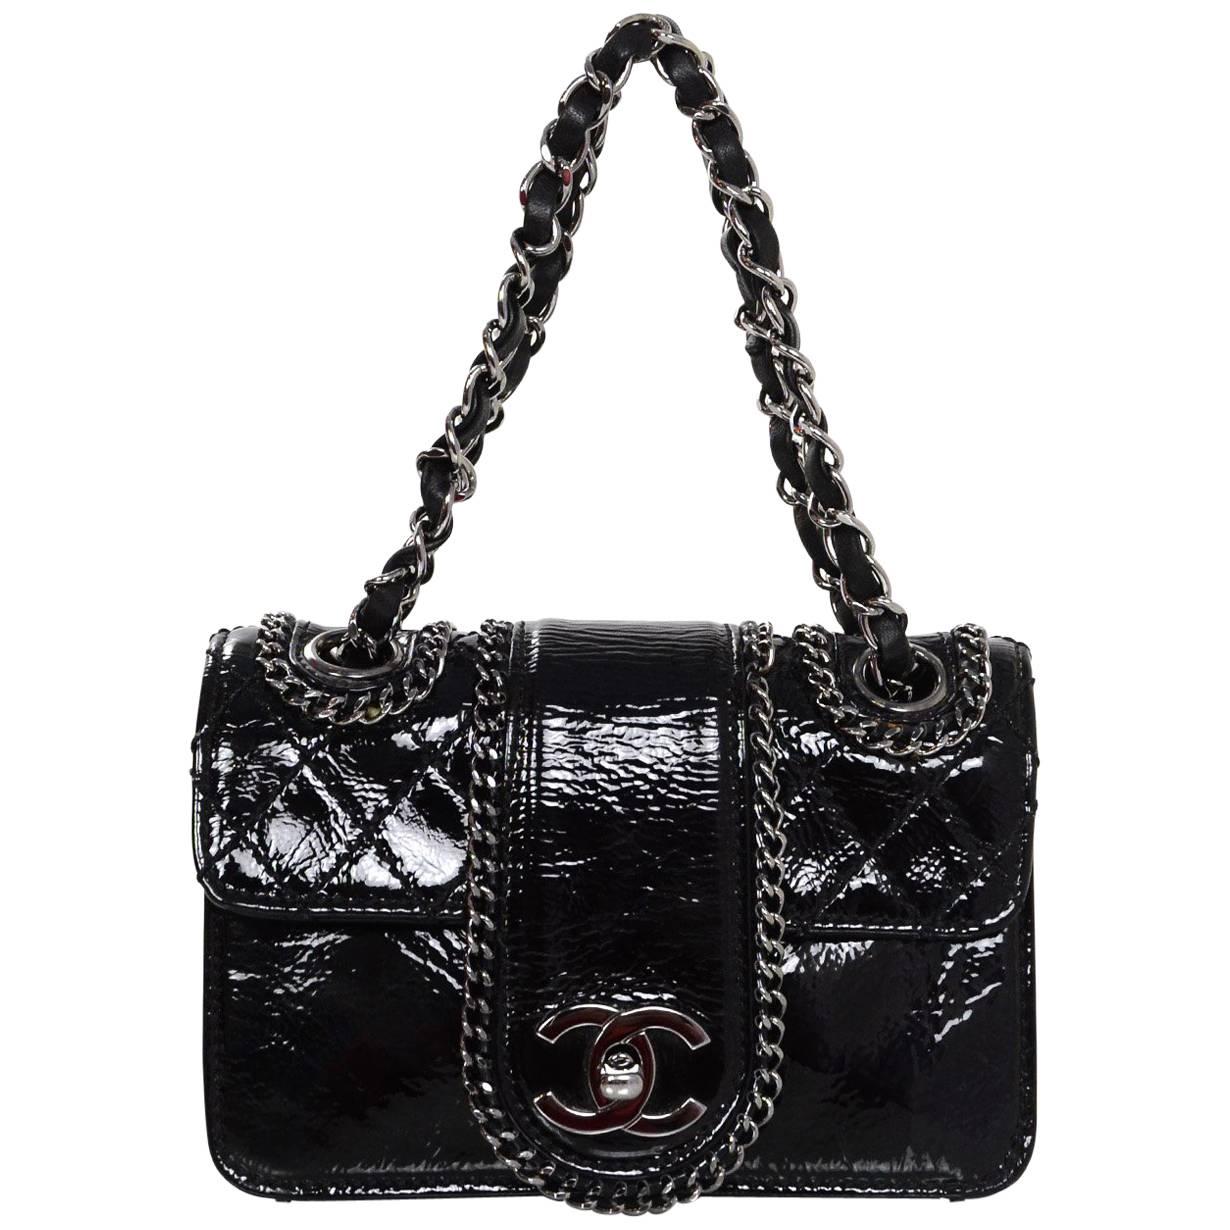 Chanel Black Patent Mini Madison Flap Bag